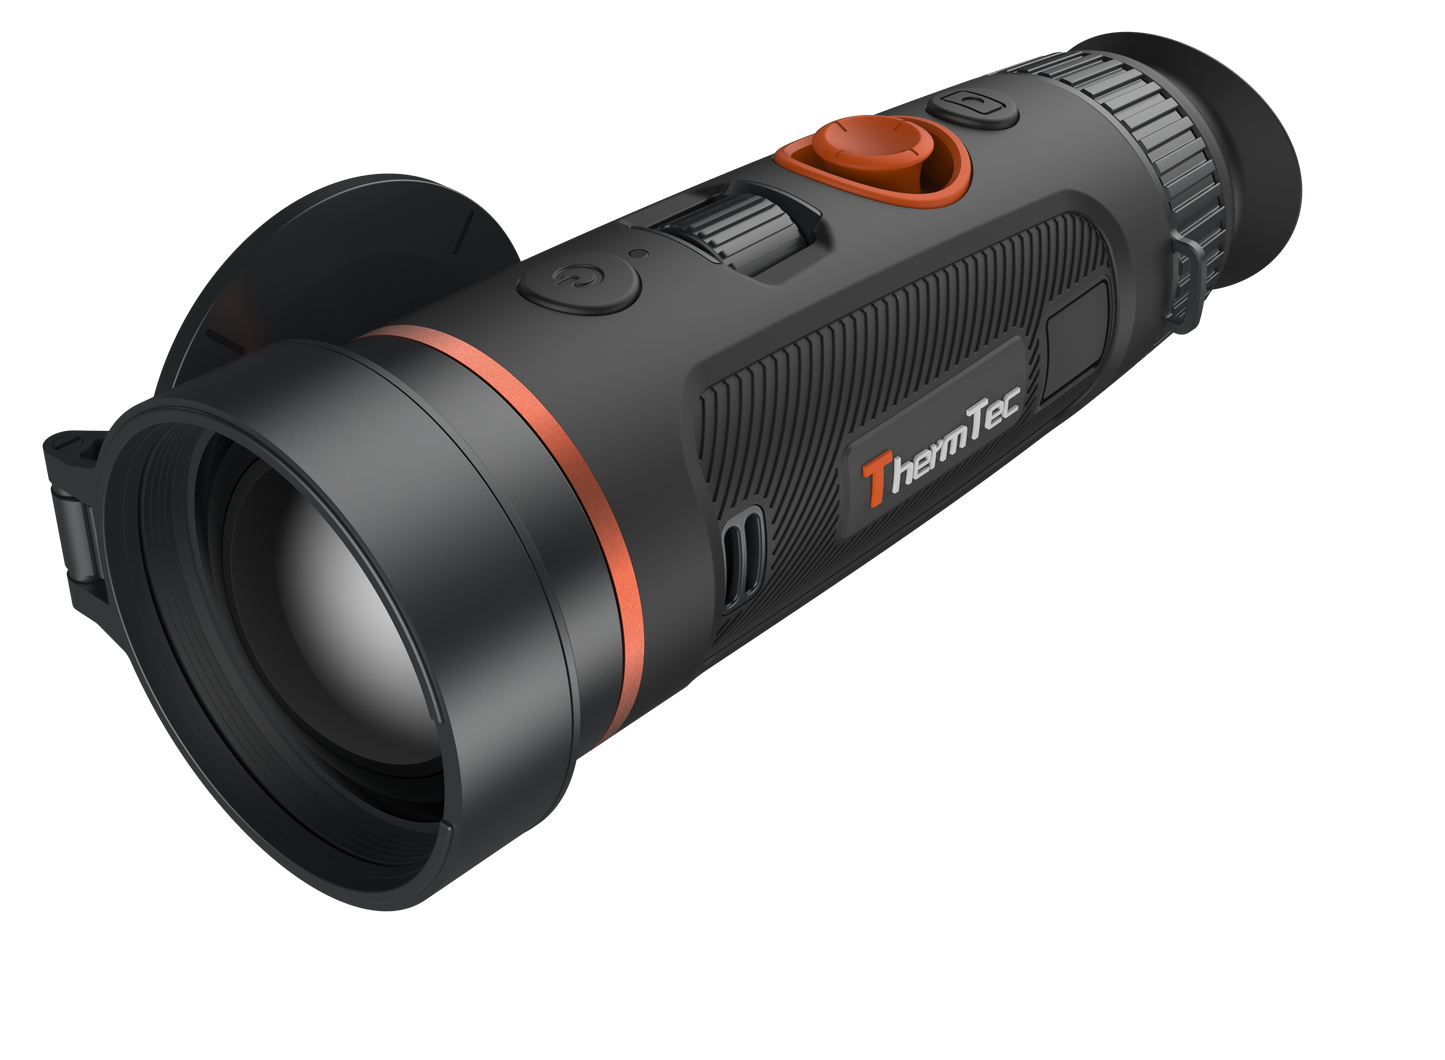 ThermTec WILD 650 Wärmebildkamera großer Sensor mit Fingerfokussierung Neuheit 2024